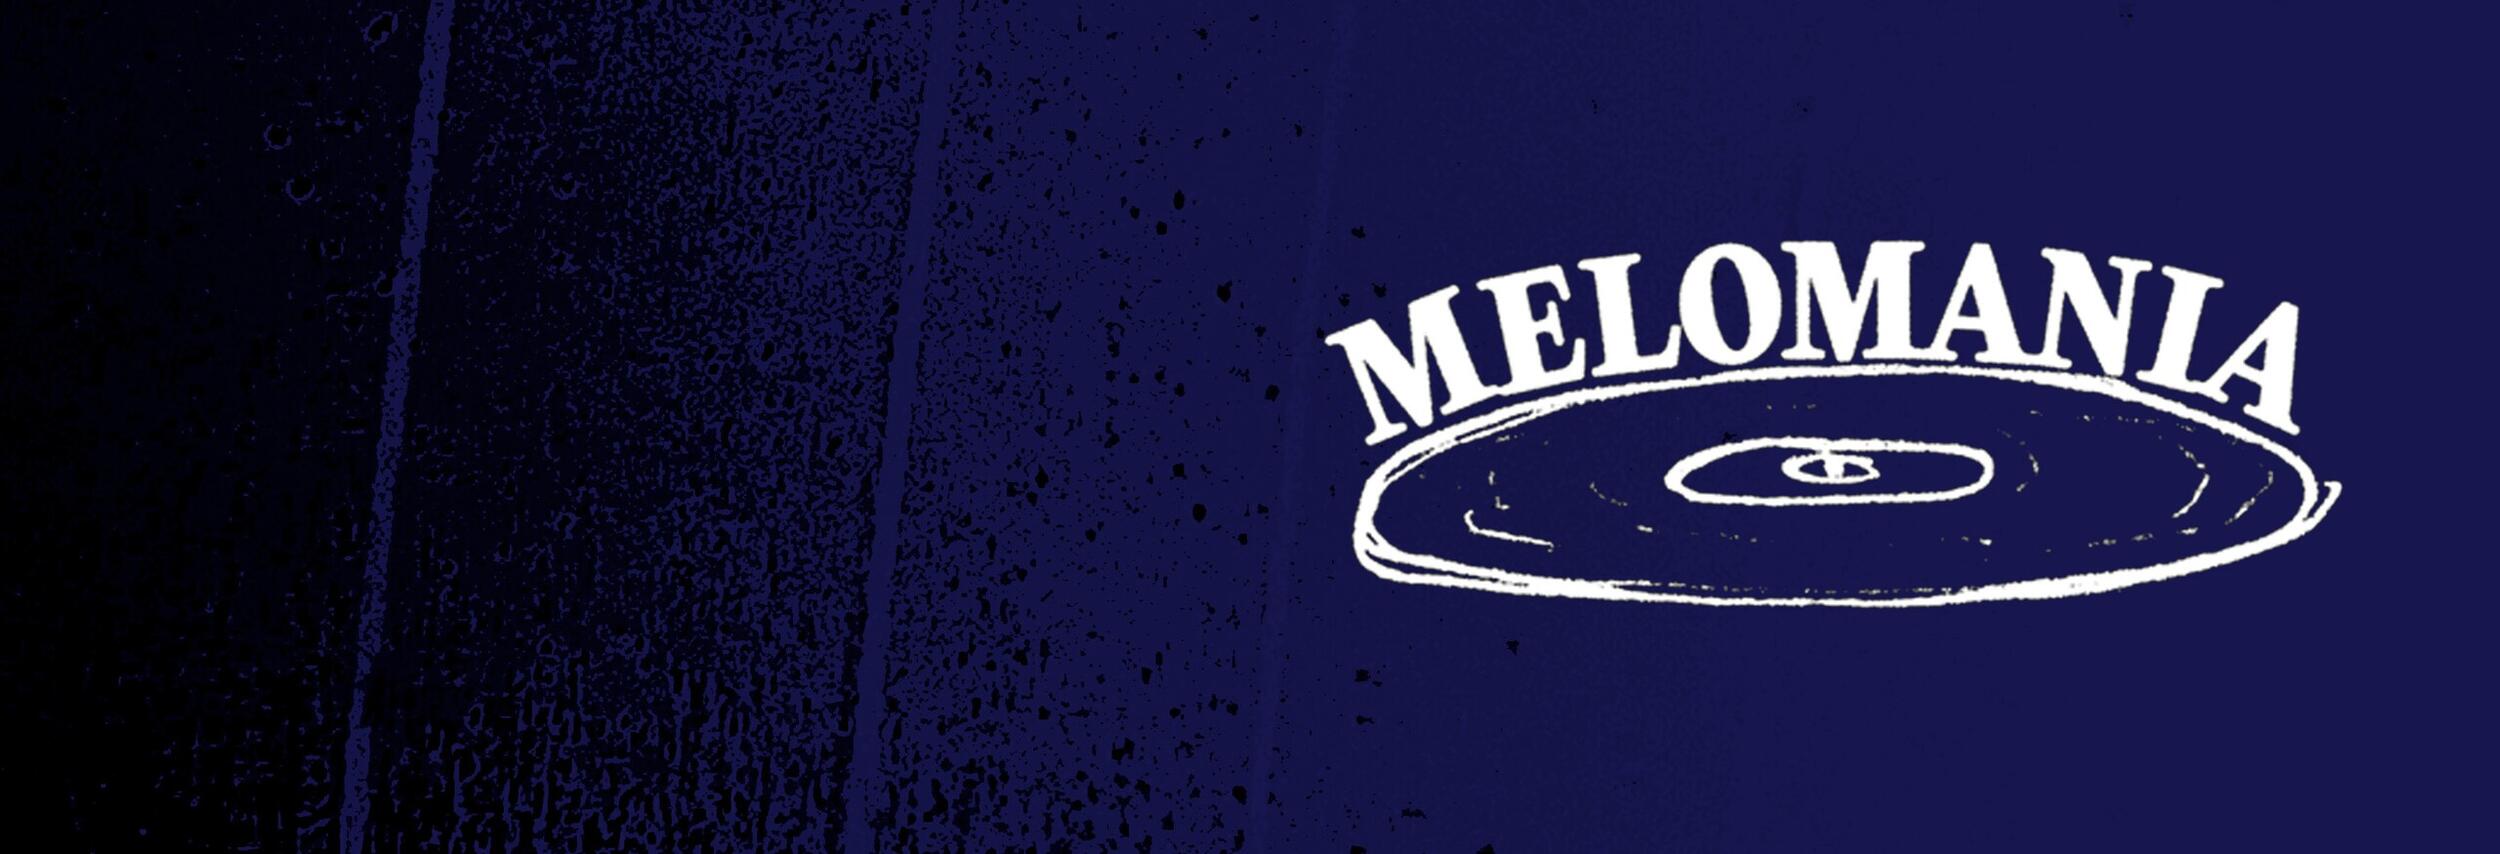 Melomania #2 com Caetano Veloso